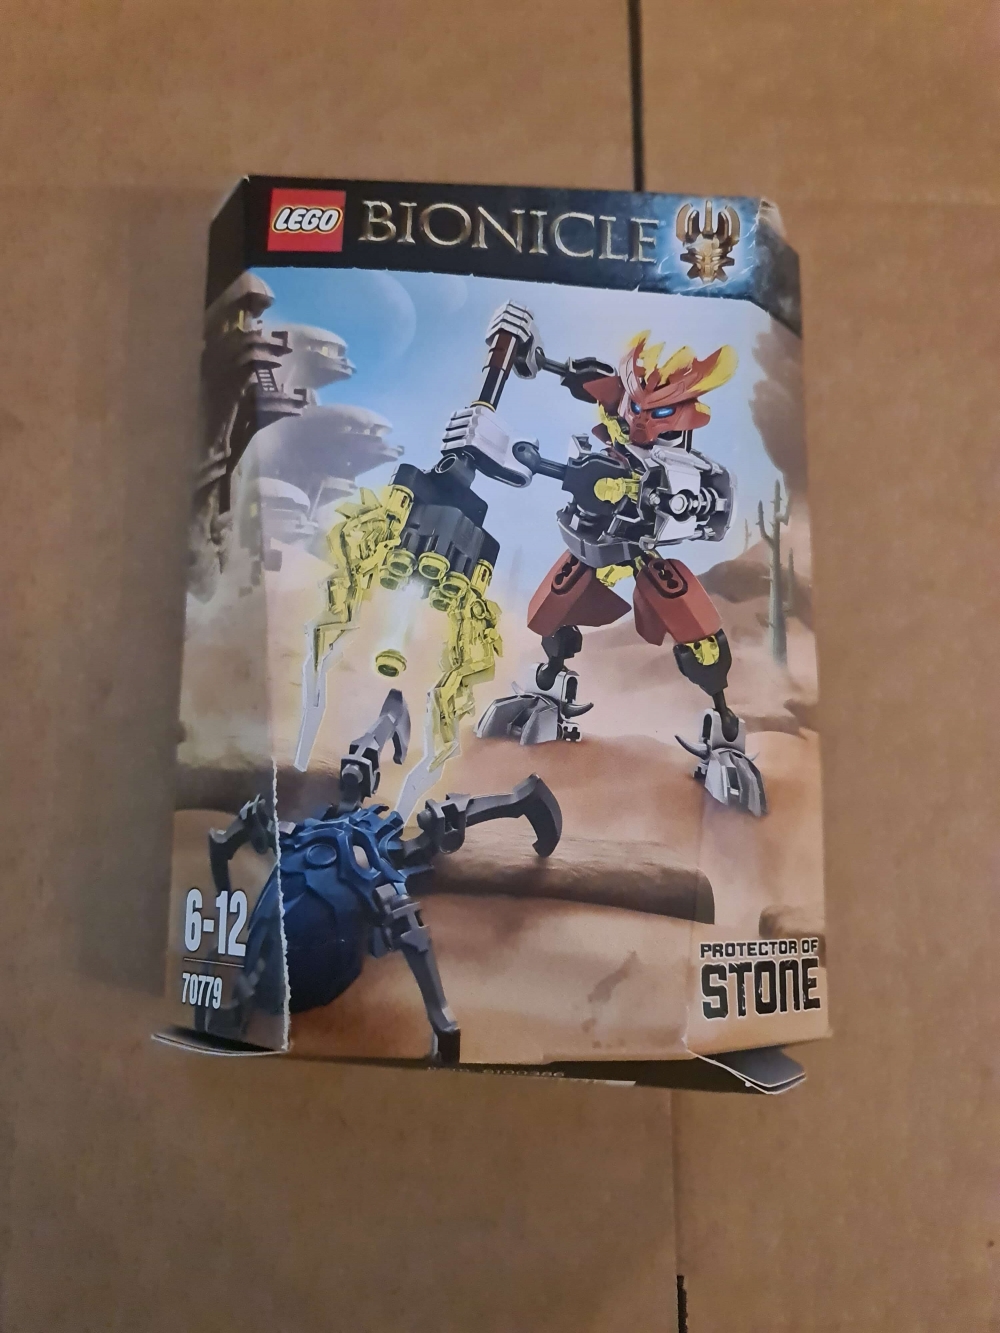 Sett 70779 fra Lego Bionicle serien.
Nytt i eske. Esken har en rift.